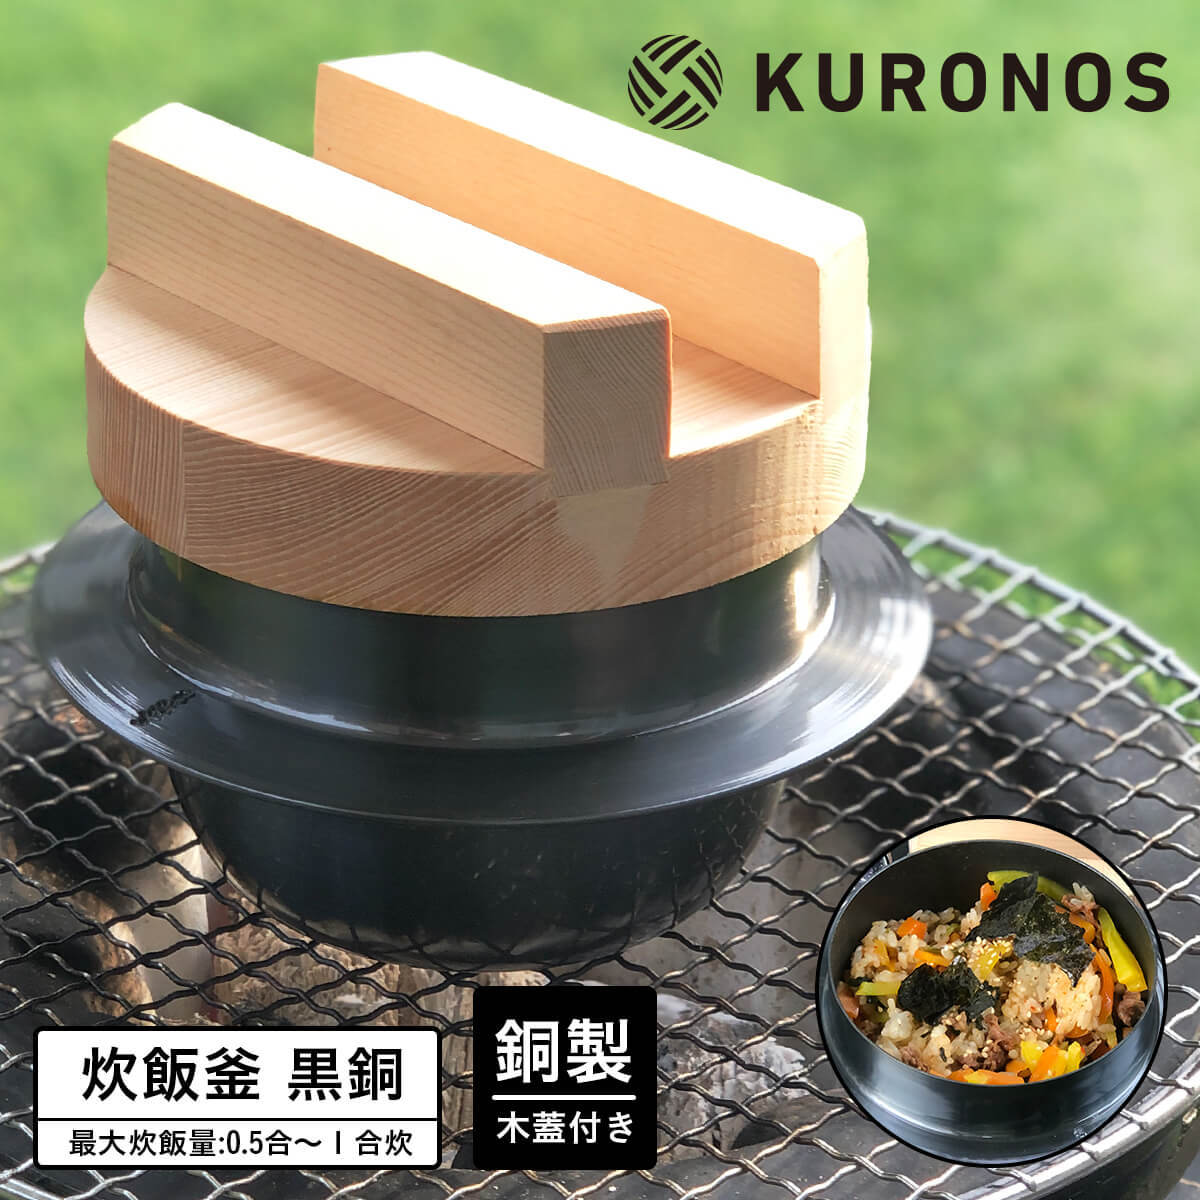 KURONOS クロノス 羽釜 黒銅羽釜 1合用 木蓋付き 炊飯釜 日本製 